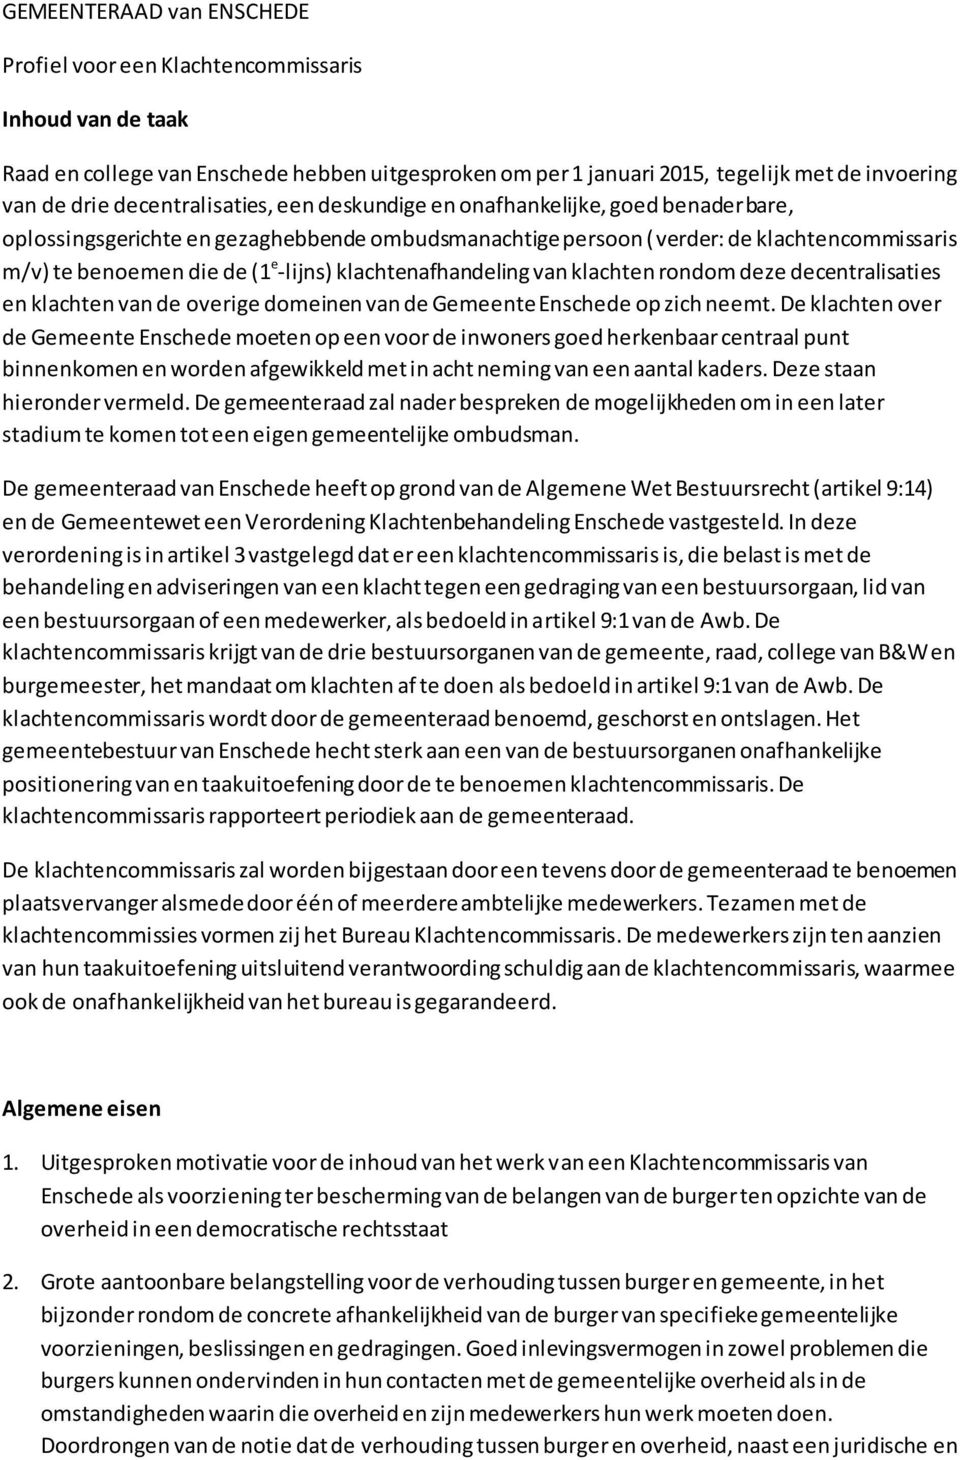 klachtenafhandeling van klachten rondom deze decentralisaties en klachten van de overige domeinen van de Gemeente Enschede op zich neemt.